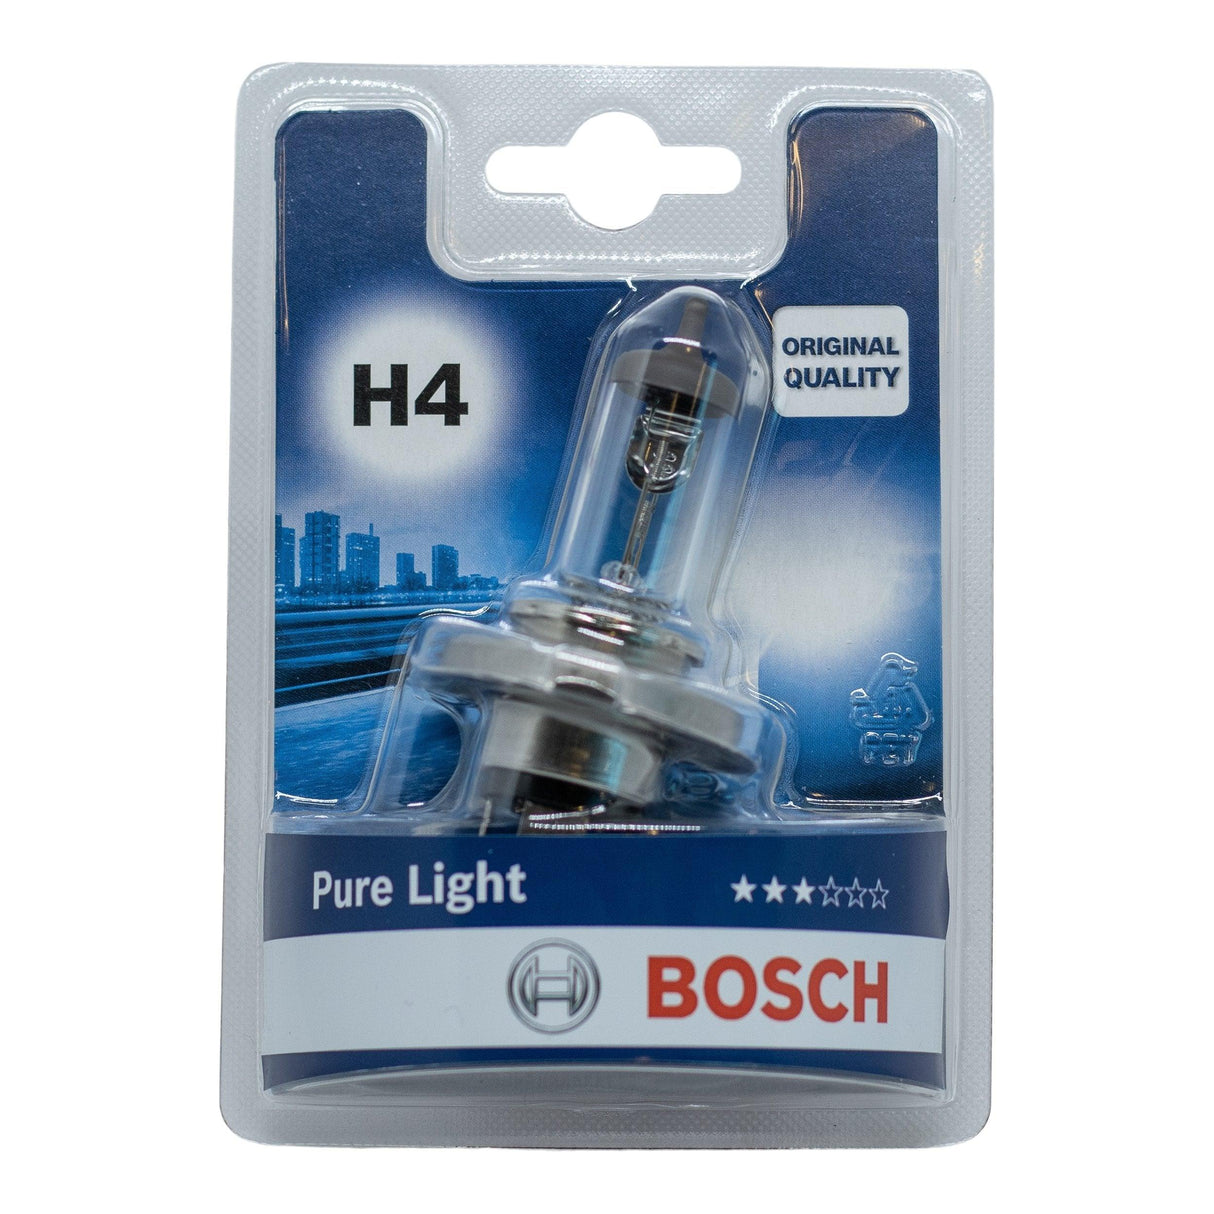 Bosch Pure Light H4 - Xpert Cleaning